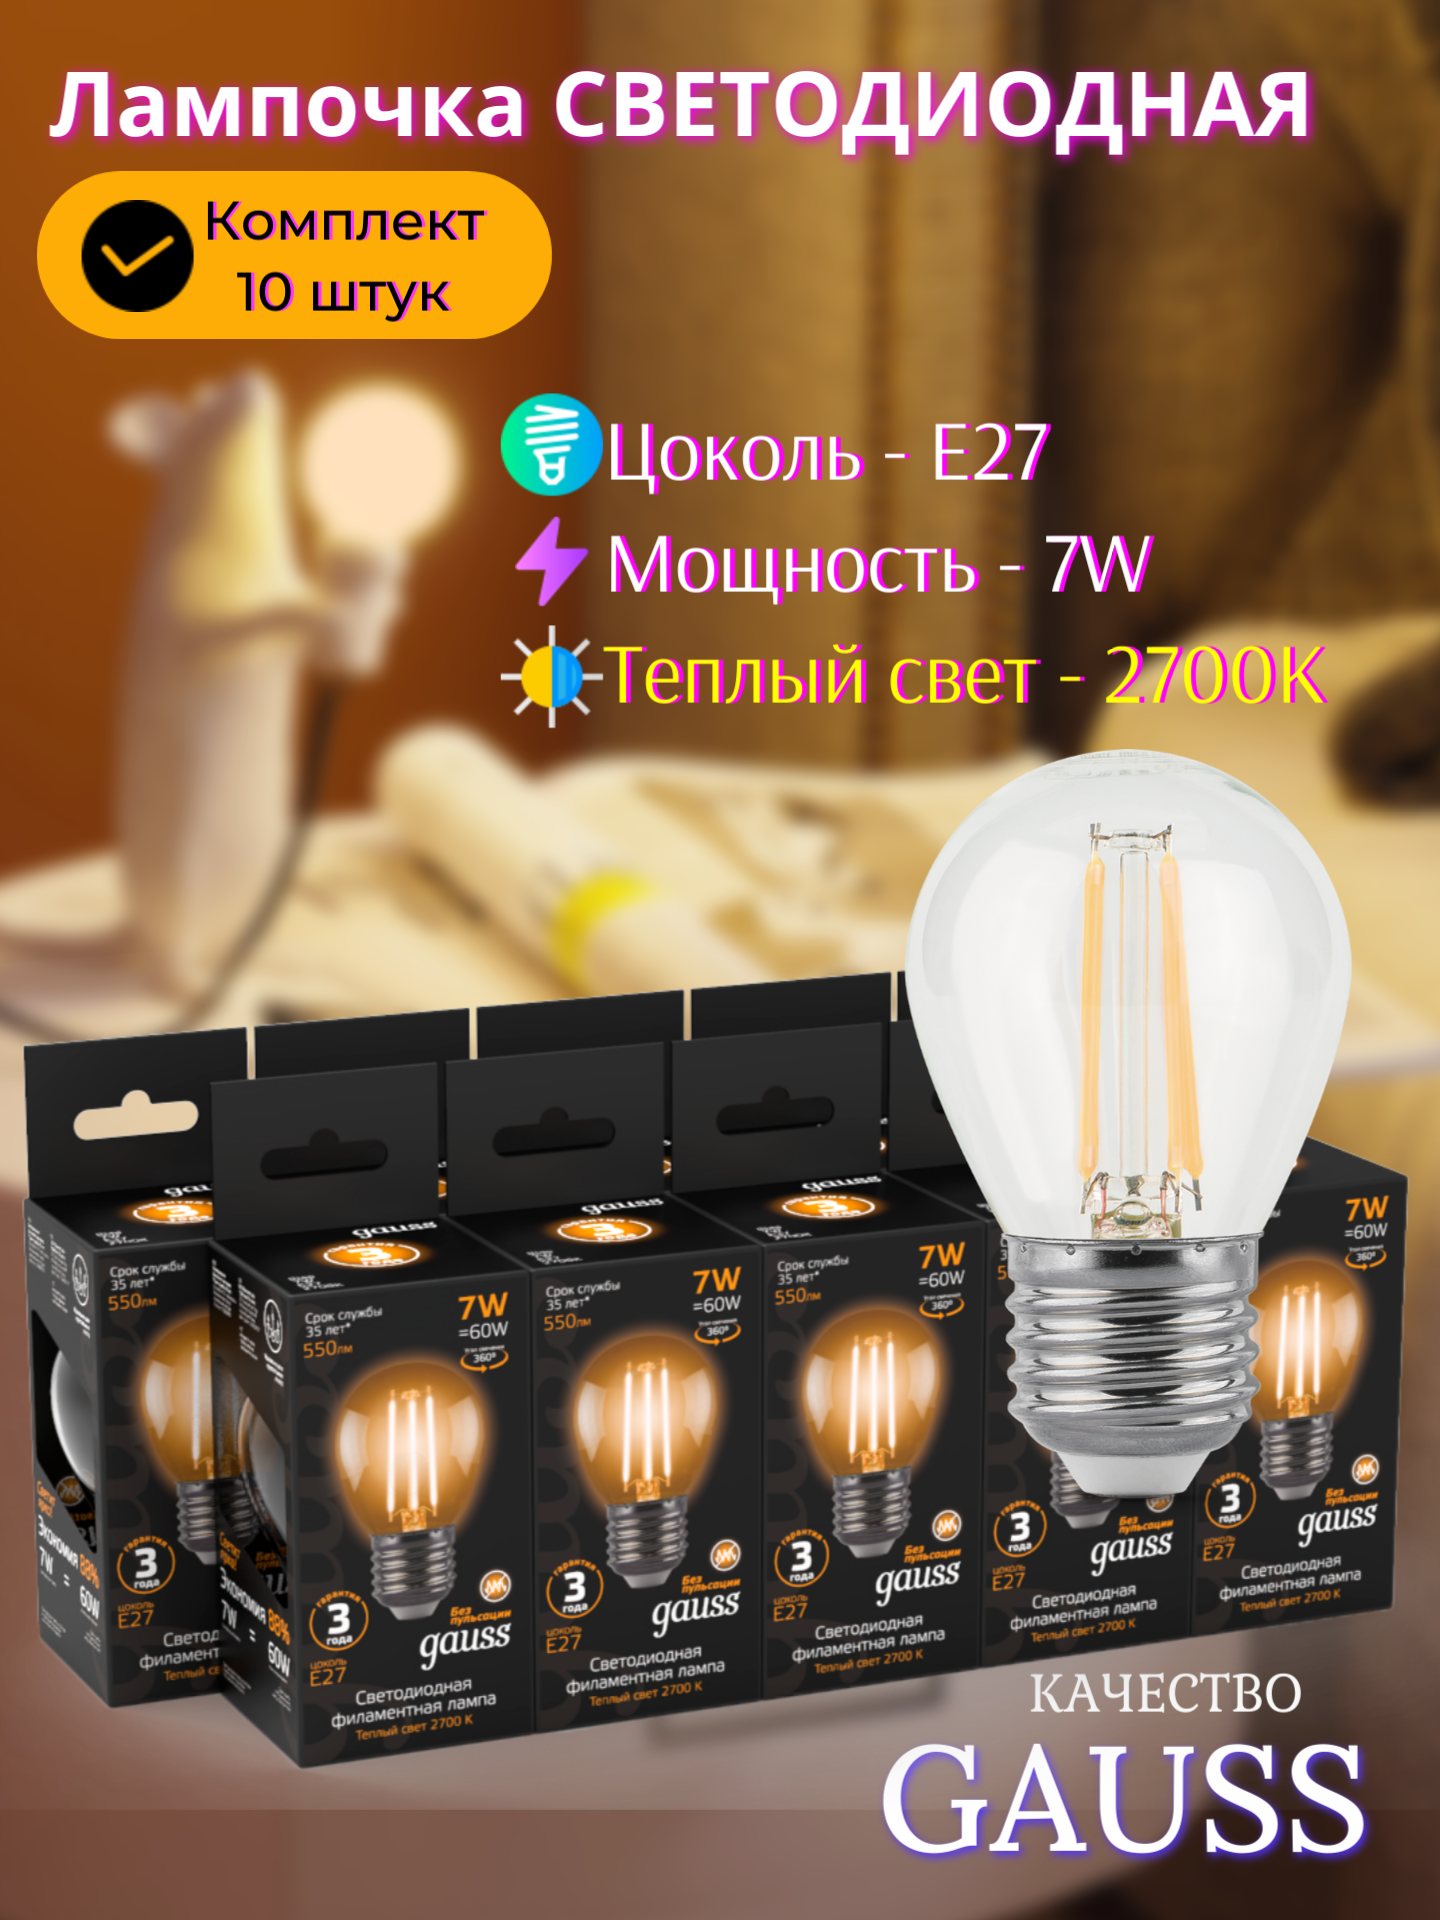 Лампочка светодиодная E27 Шар 7W теплый свет 2700K упаковка 10 шт. Gauss Filament